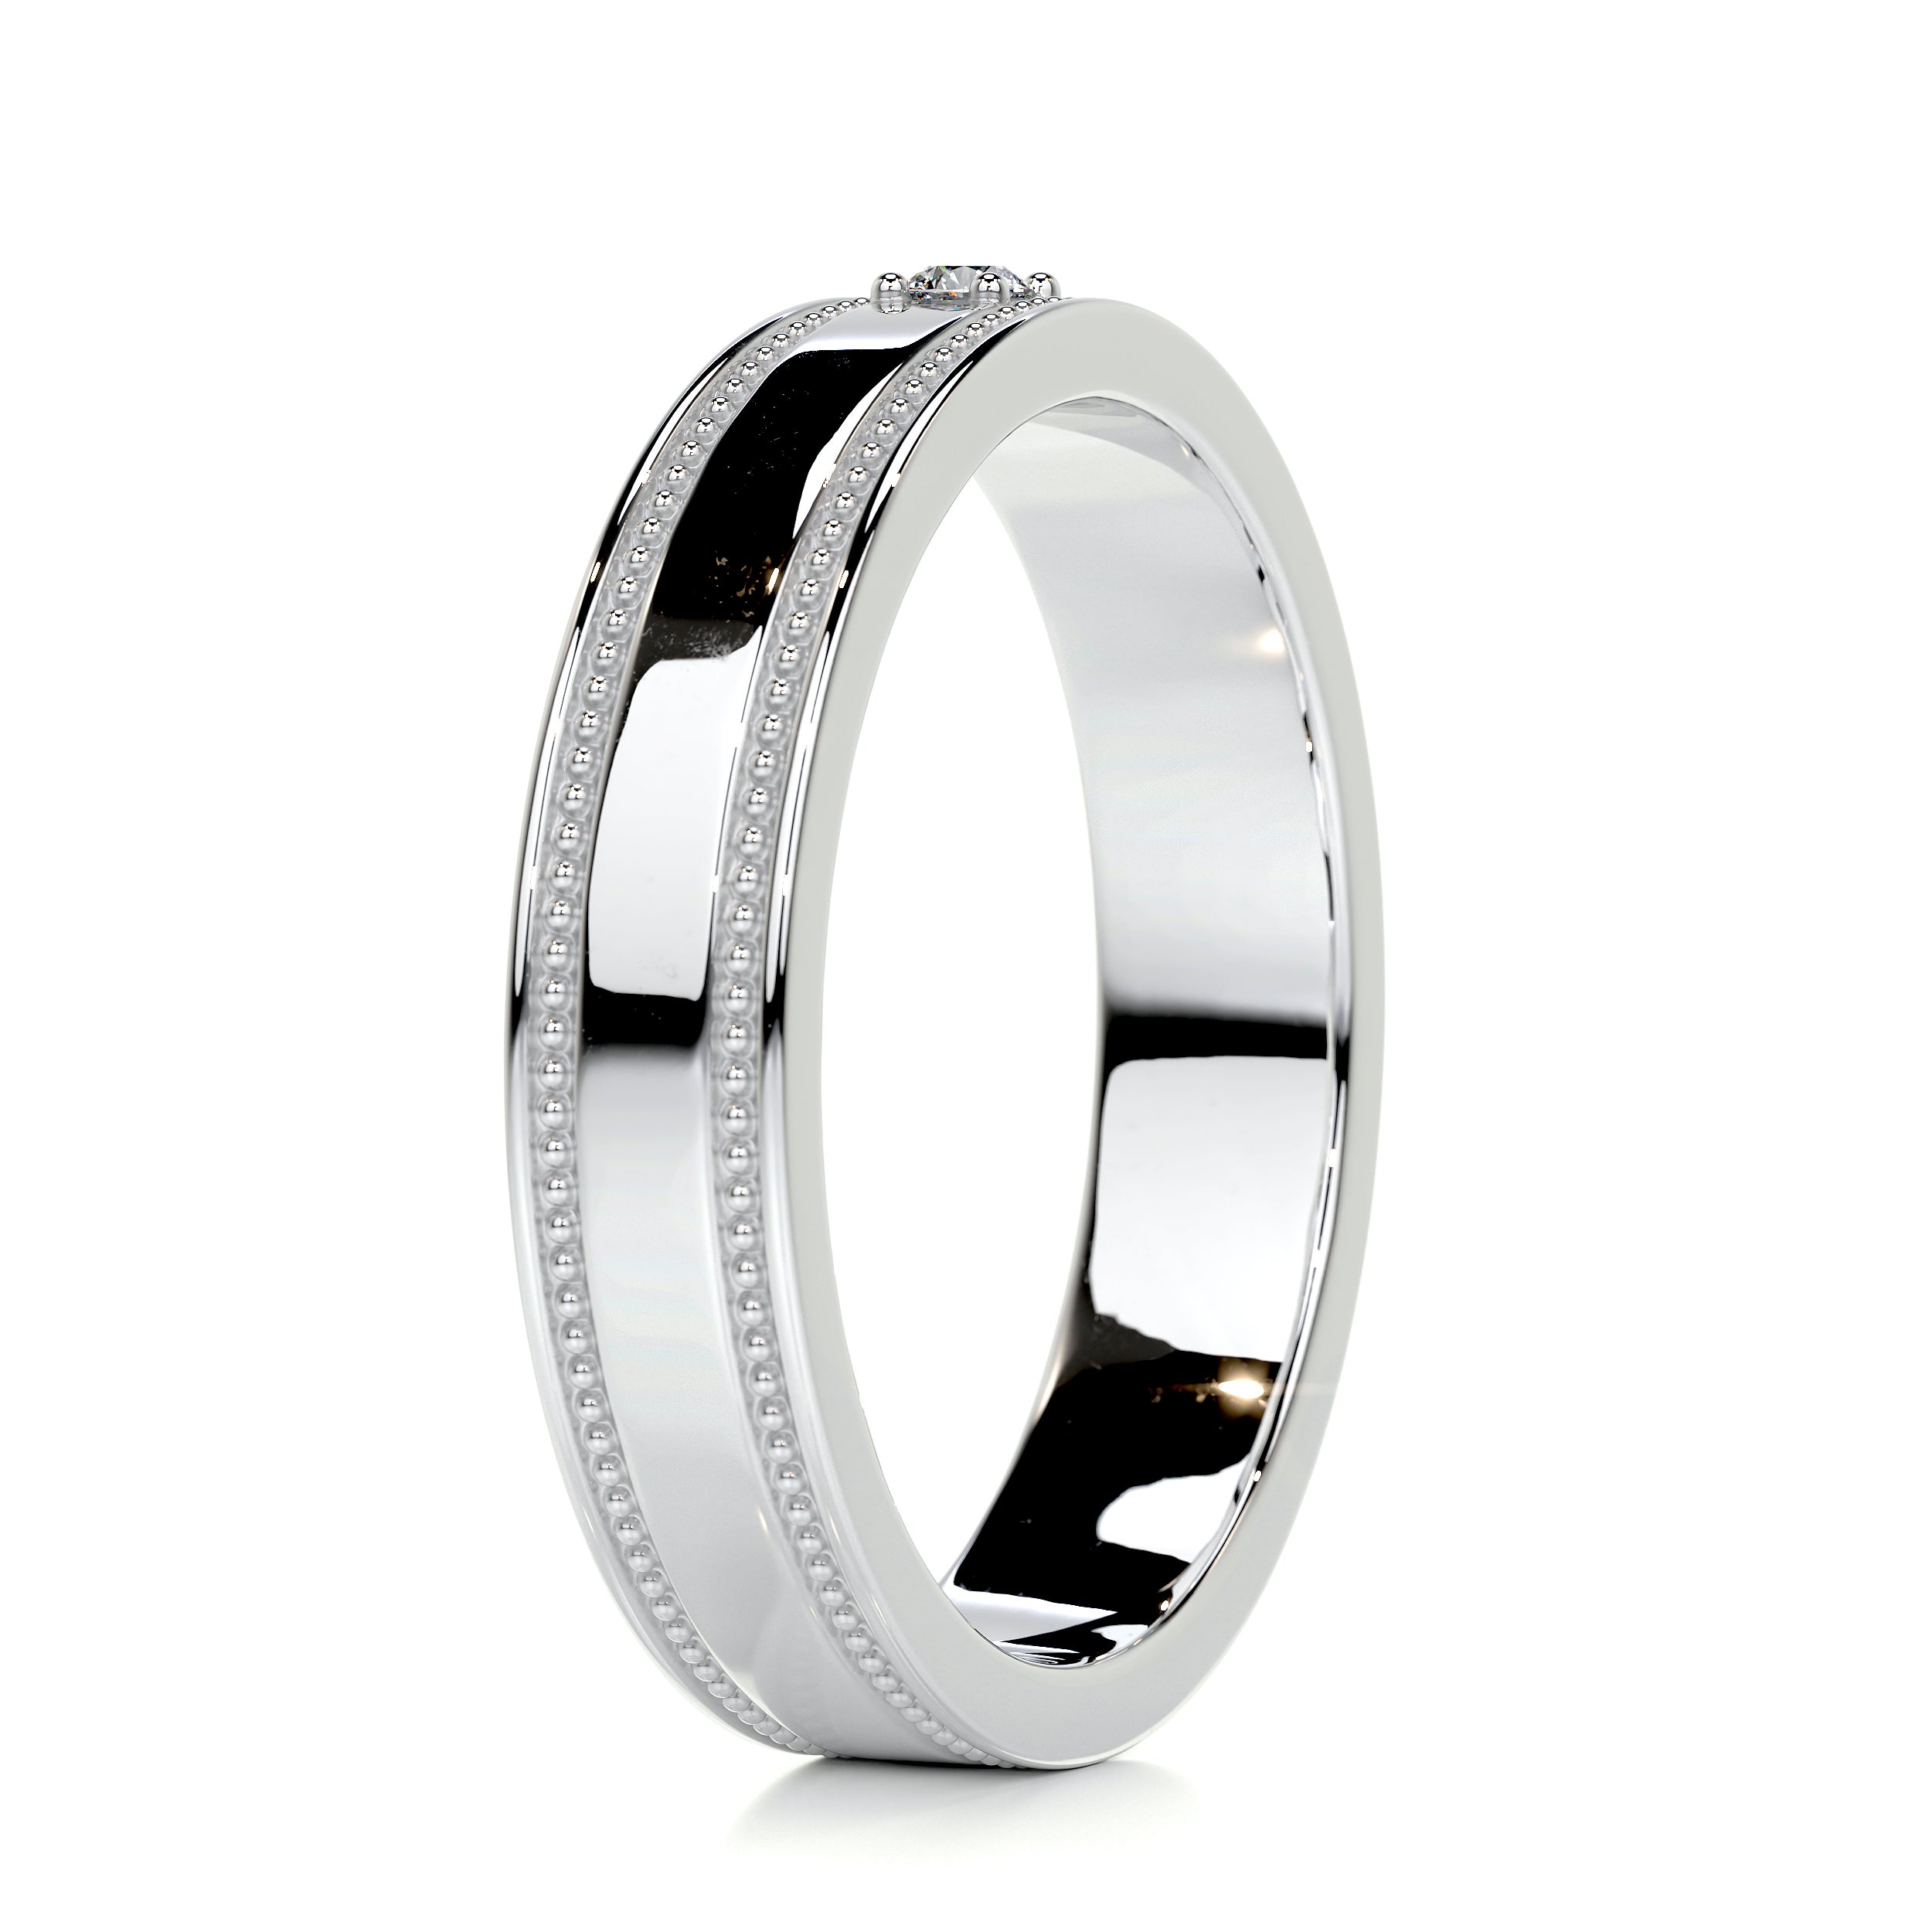 Sherry Diamond Wedding Ring   (0.02 Carat) -18K White Gold